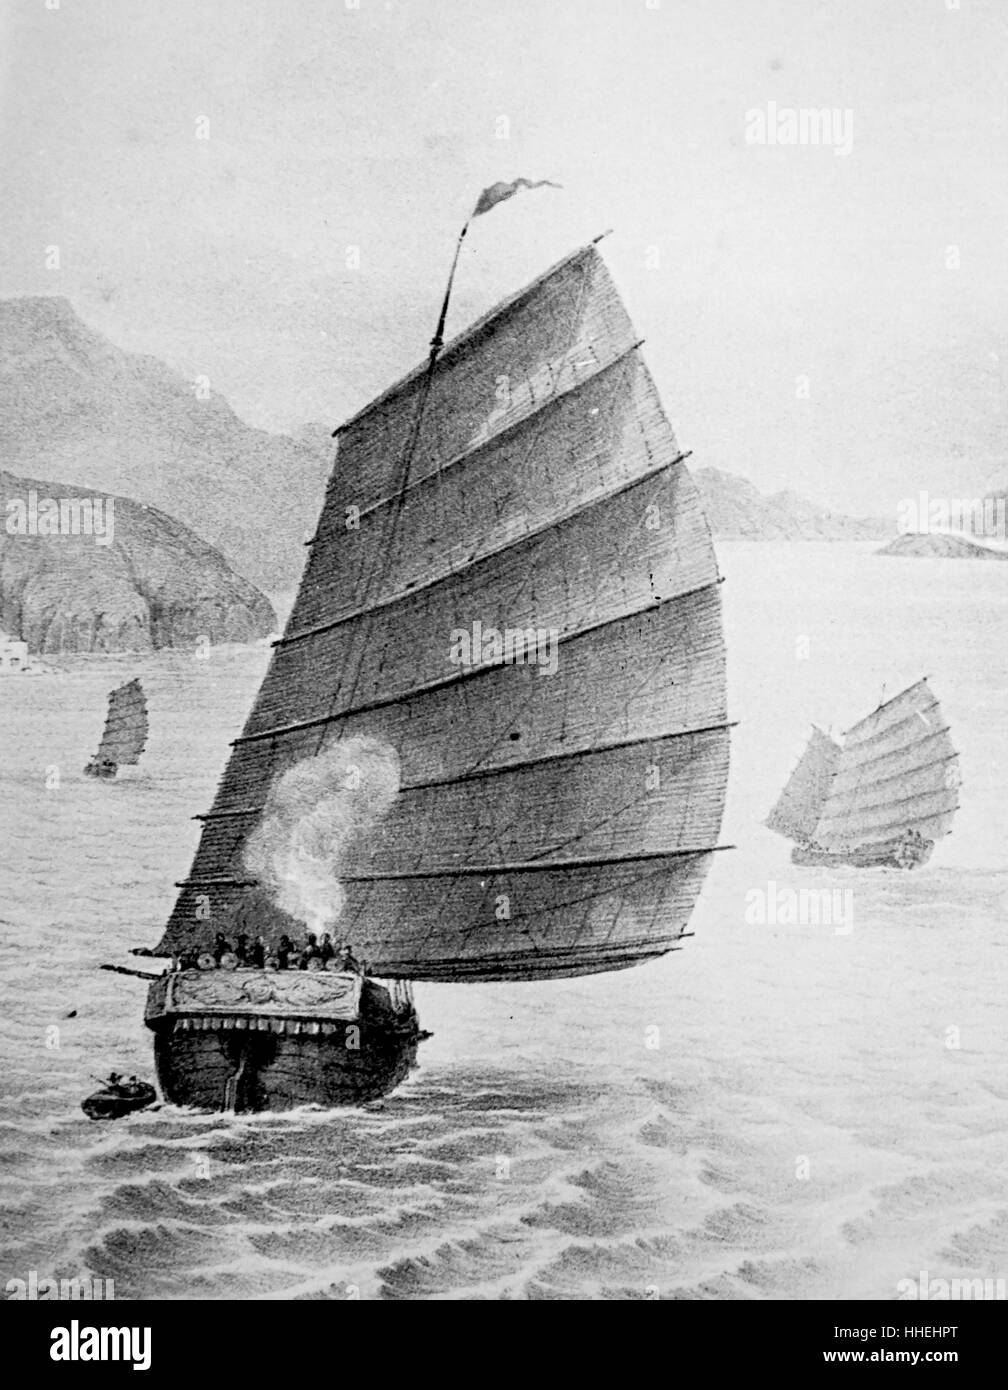 Gravur einer chinesischen Dschunke, einer alten chinesischen Segelschiff design, mit einem Hecksteven Ruder. Vom 19. Jahrhundert Stockfoto